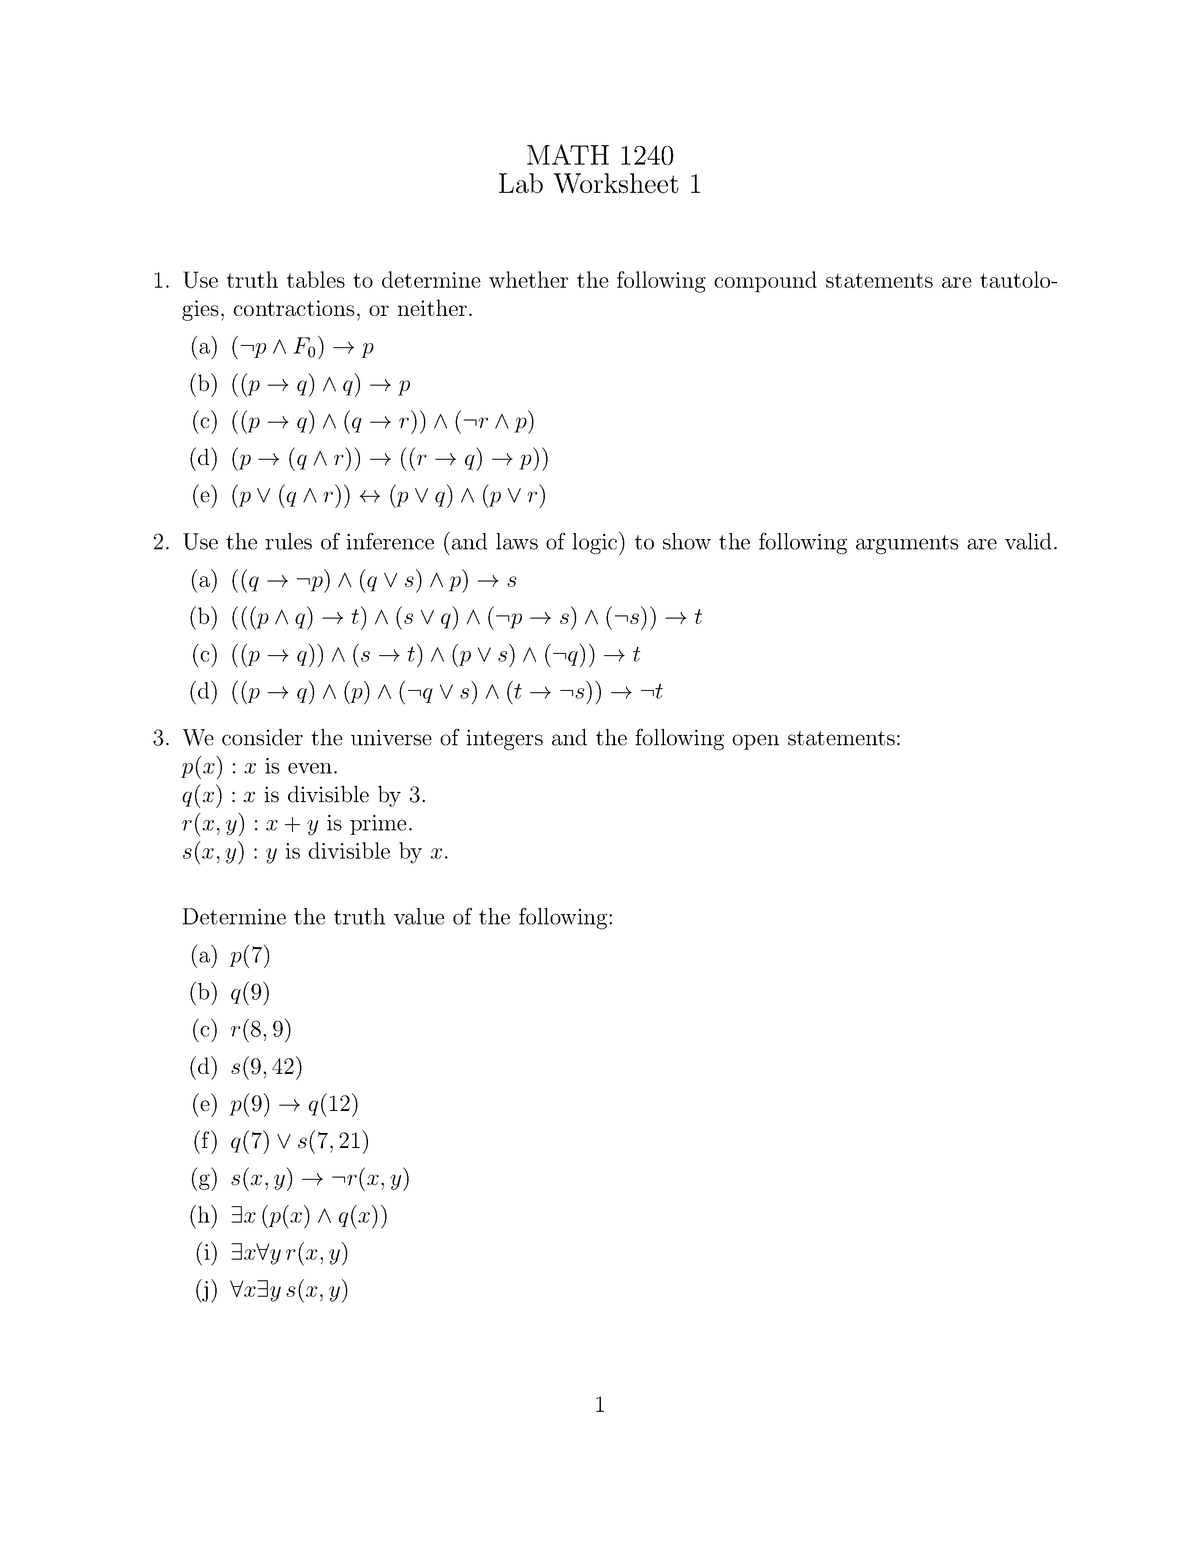 Worksheet 1questions Math1240 U Of M Studocu